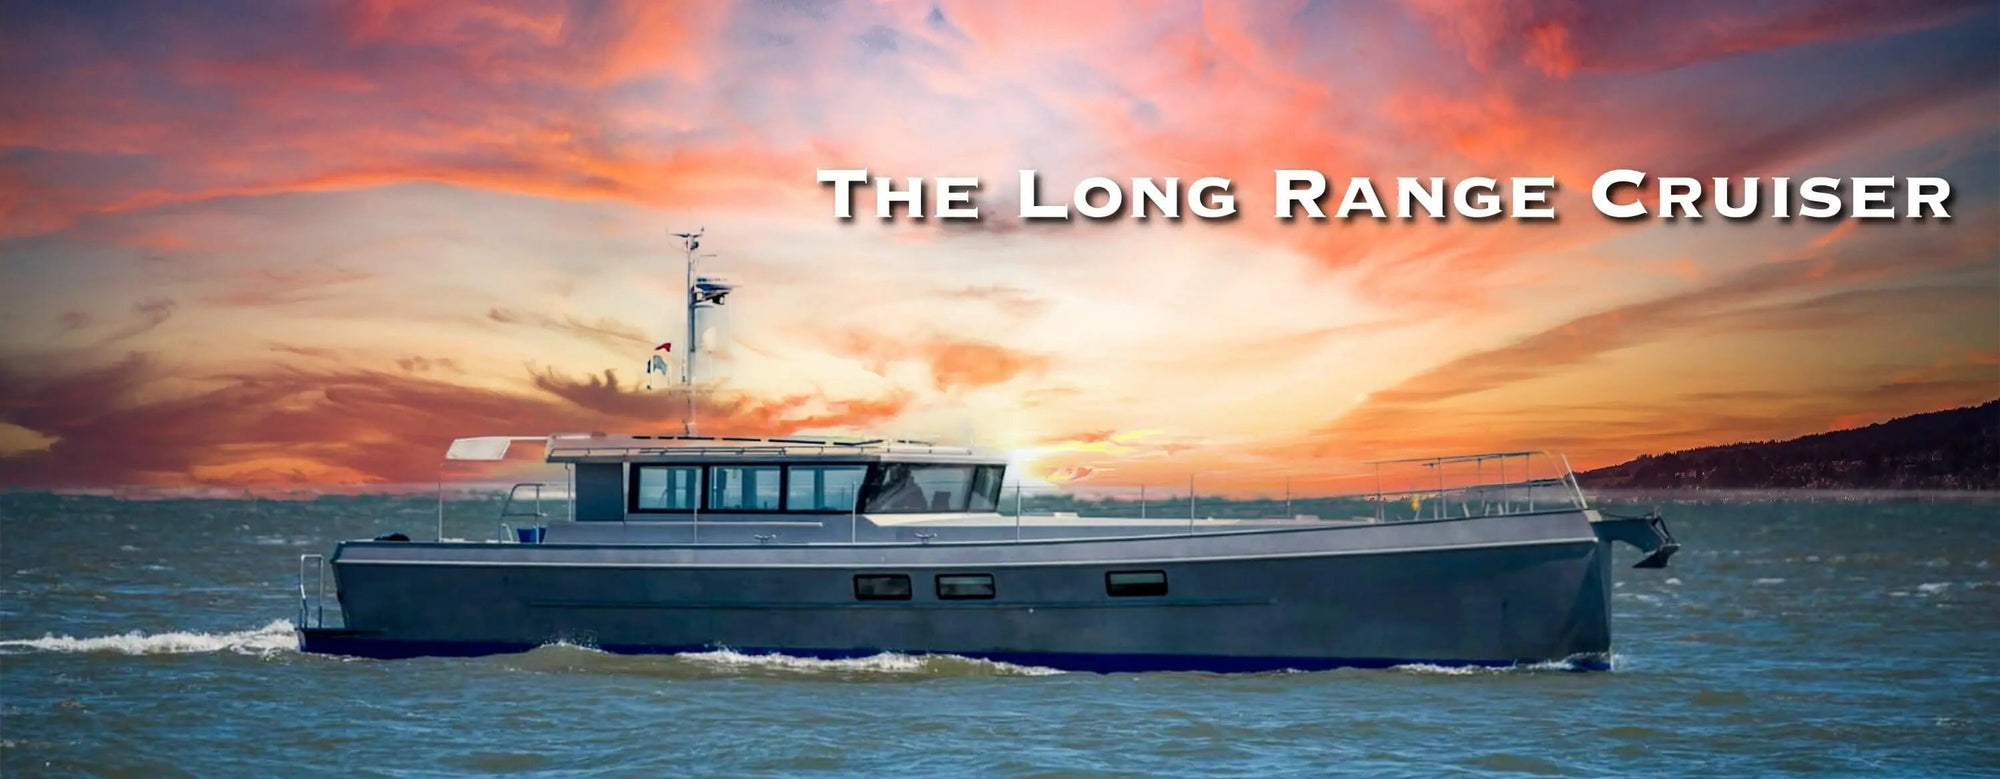 The Long Range Cruiser